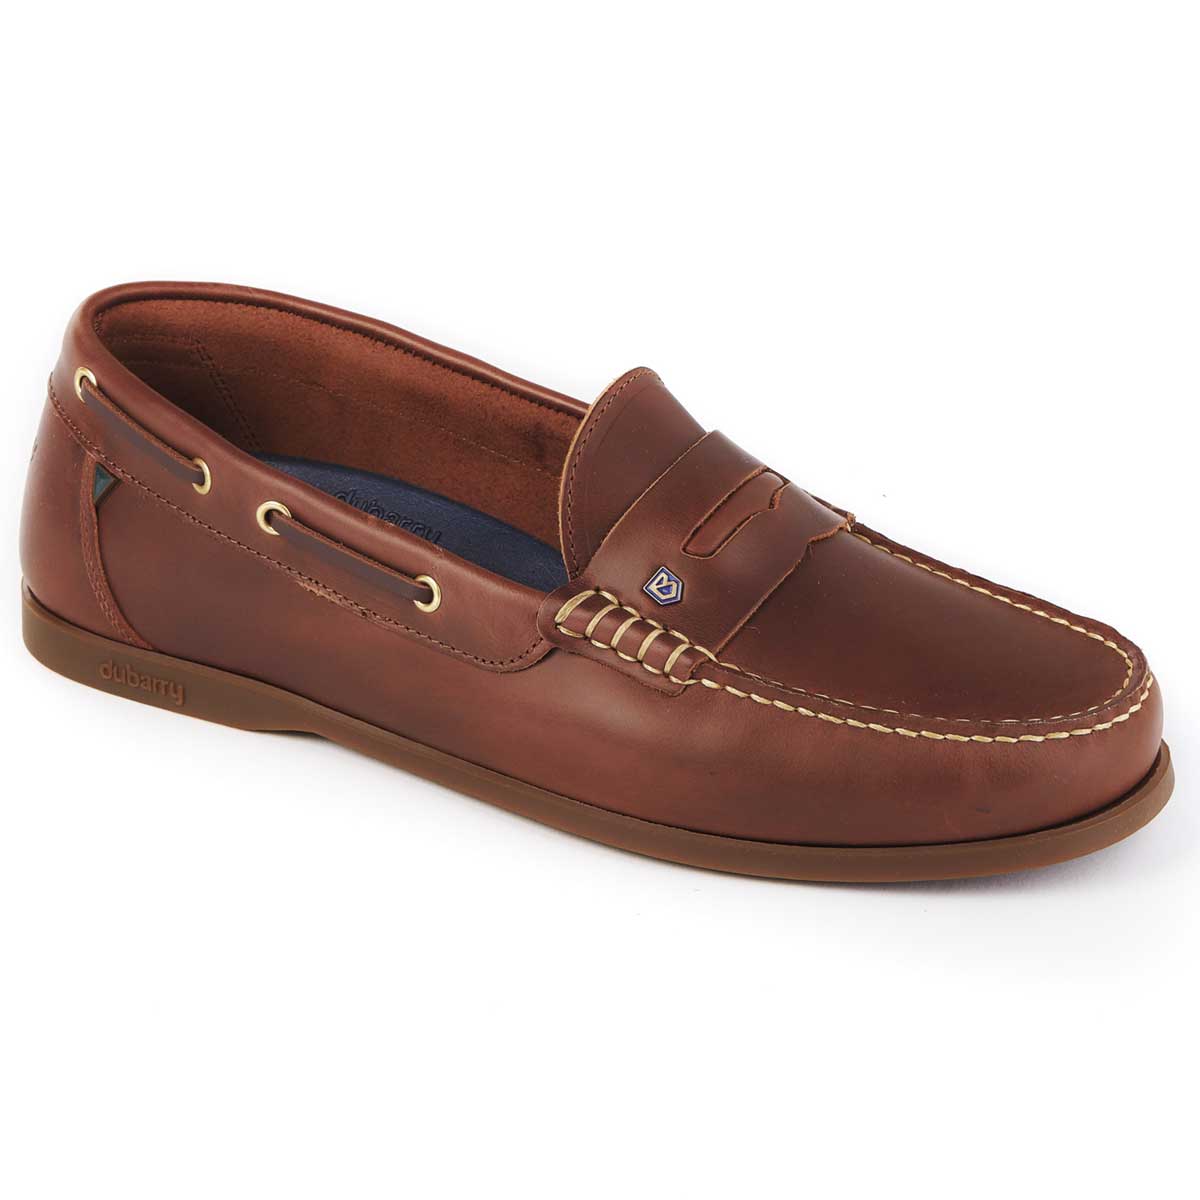 40% OFF DUBARRY Men's Spinnaker Loafer Deck Shoes - Brown - Size: UK 10.5 (EU 45)